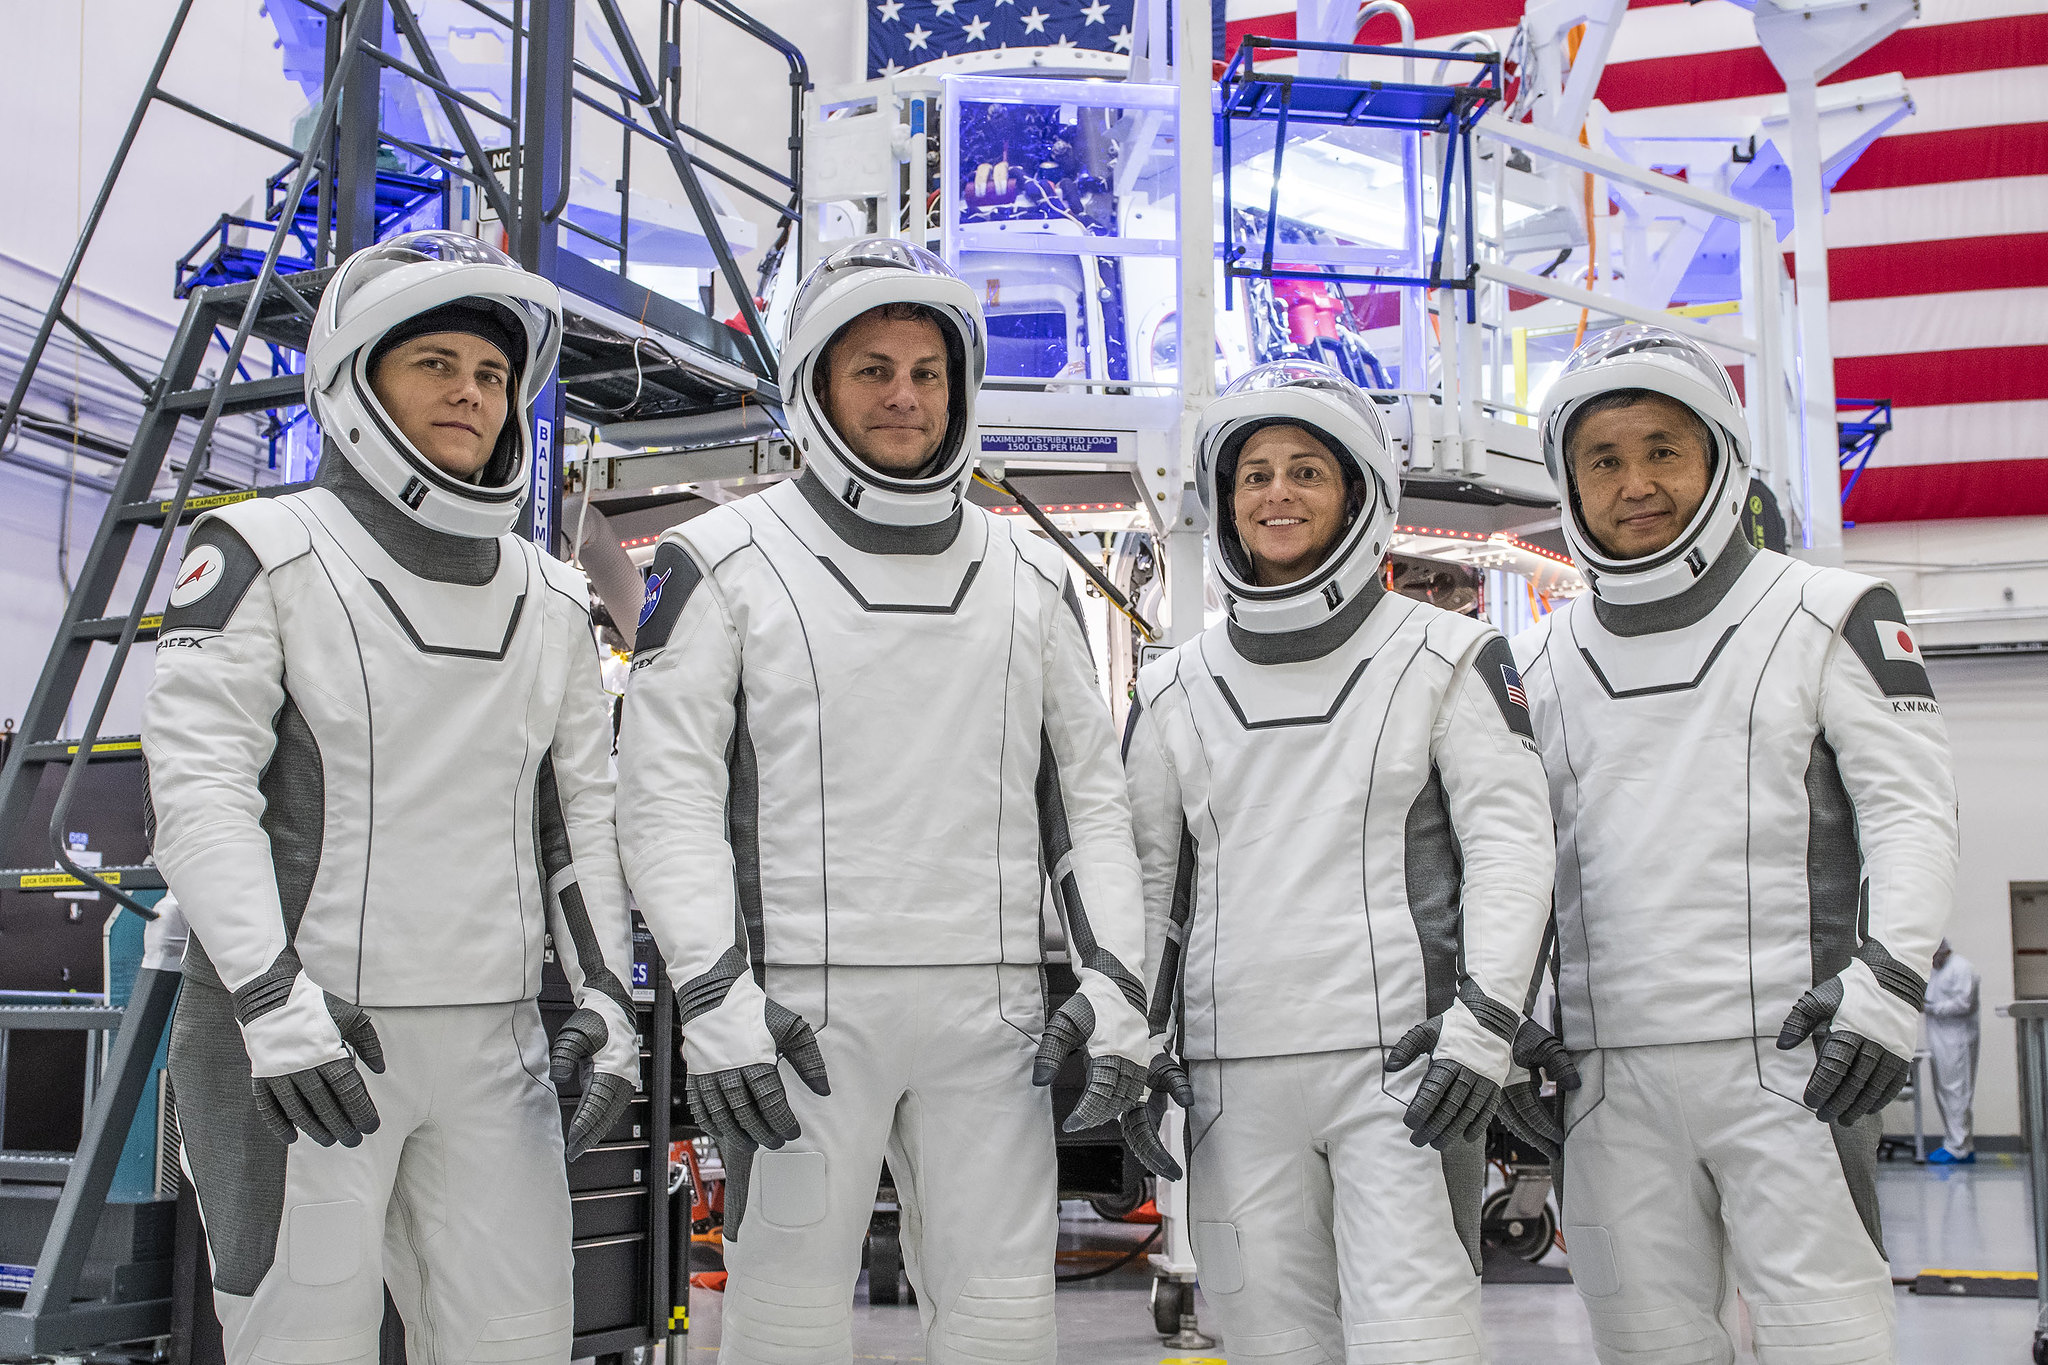 Des astronautes de SpaceX Crew-5 debout dans une rangée dans des combinaisons spatiales, devant des appareils extraterrestres non identifiés et un drapeau américain sur un mur